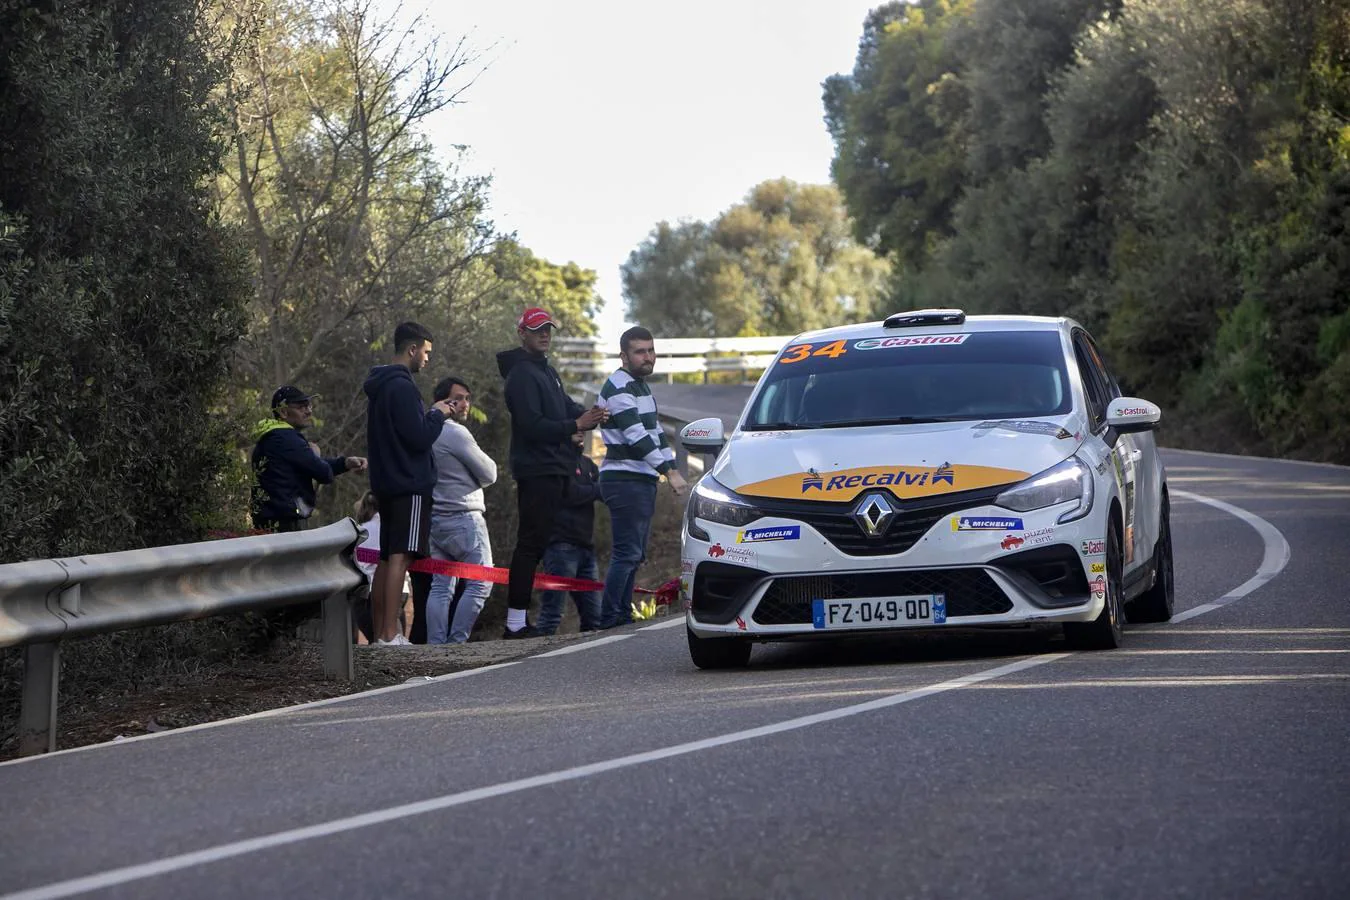 La primera jornada del Rallye Sierra Morena 2022, en imágenes